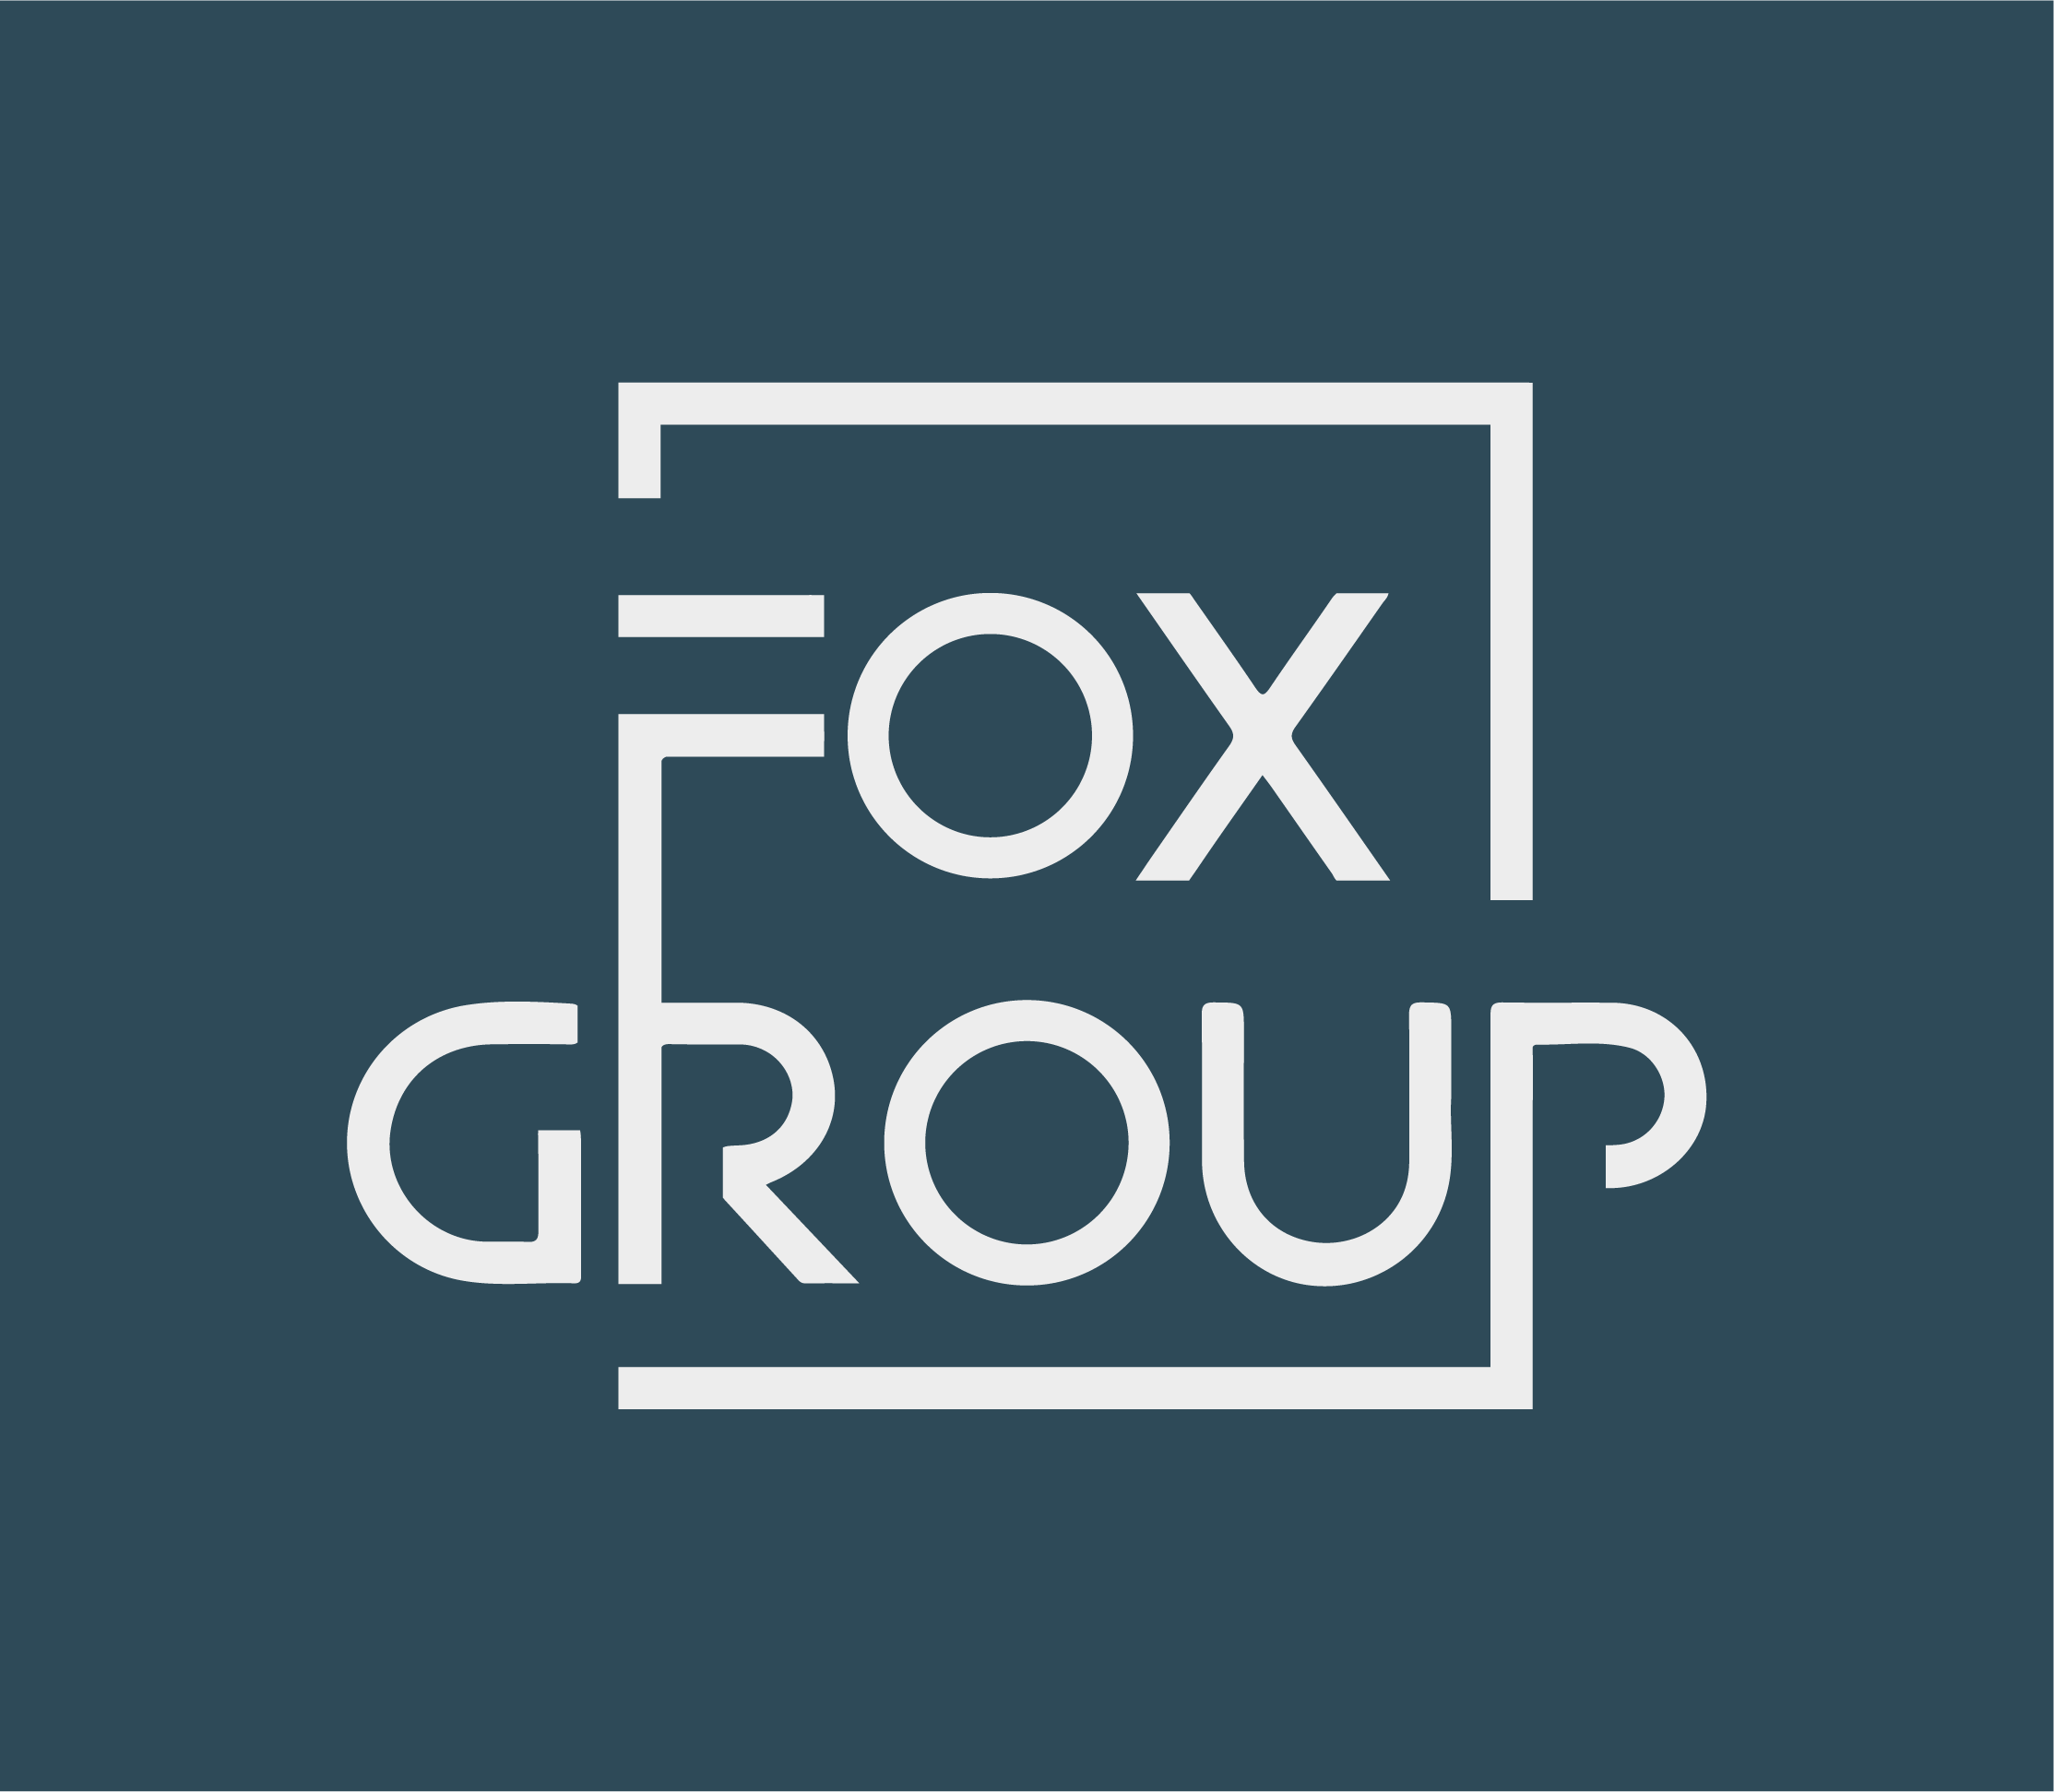 Фокс групп. Fox group